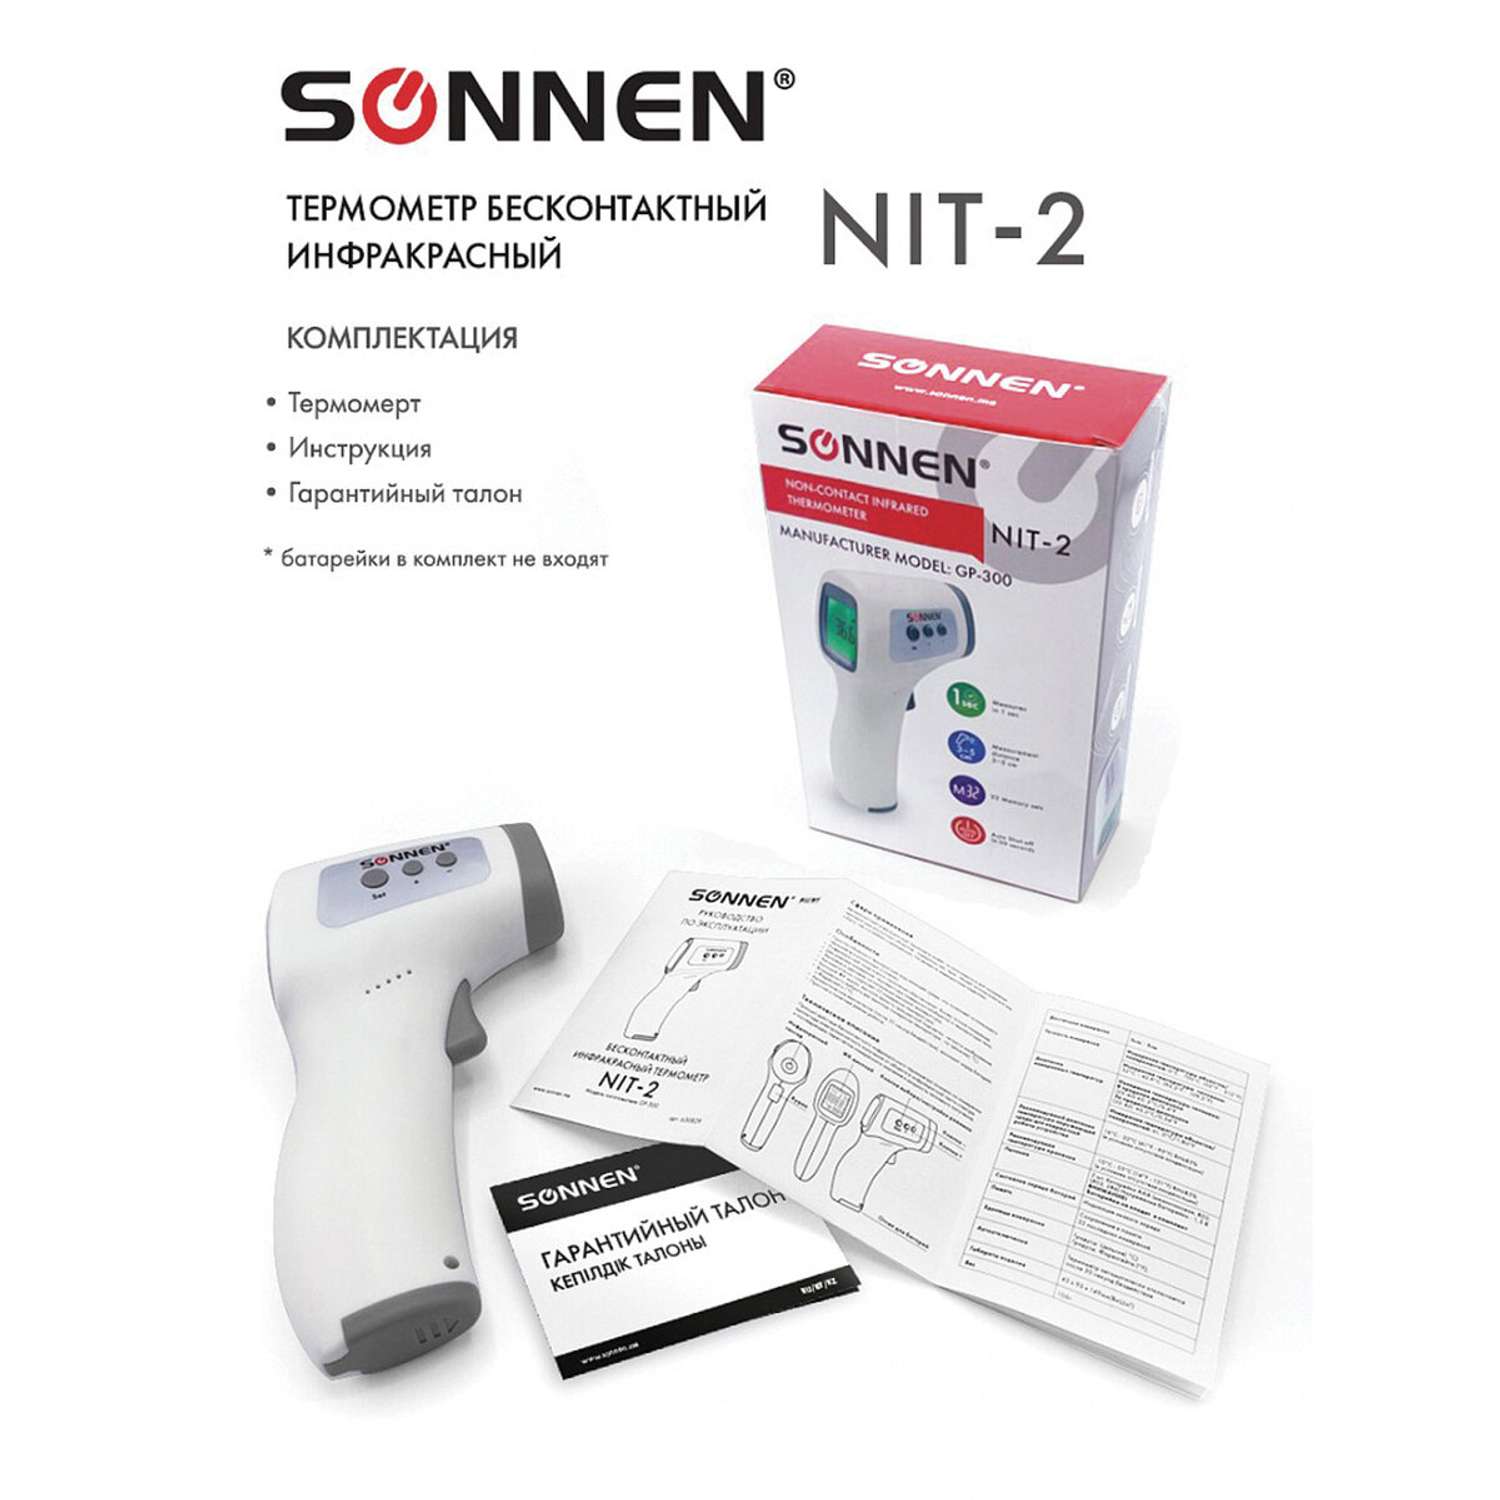 Термометр Sonnen бесконтактный инфракрасный NIT-2 GP-300 электронный - фото 3